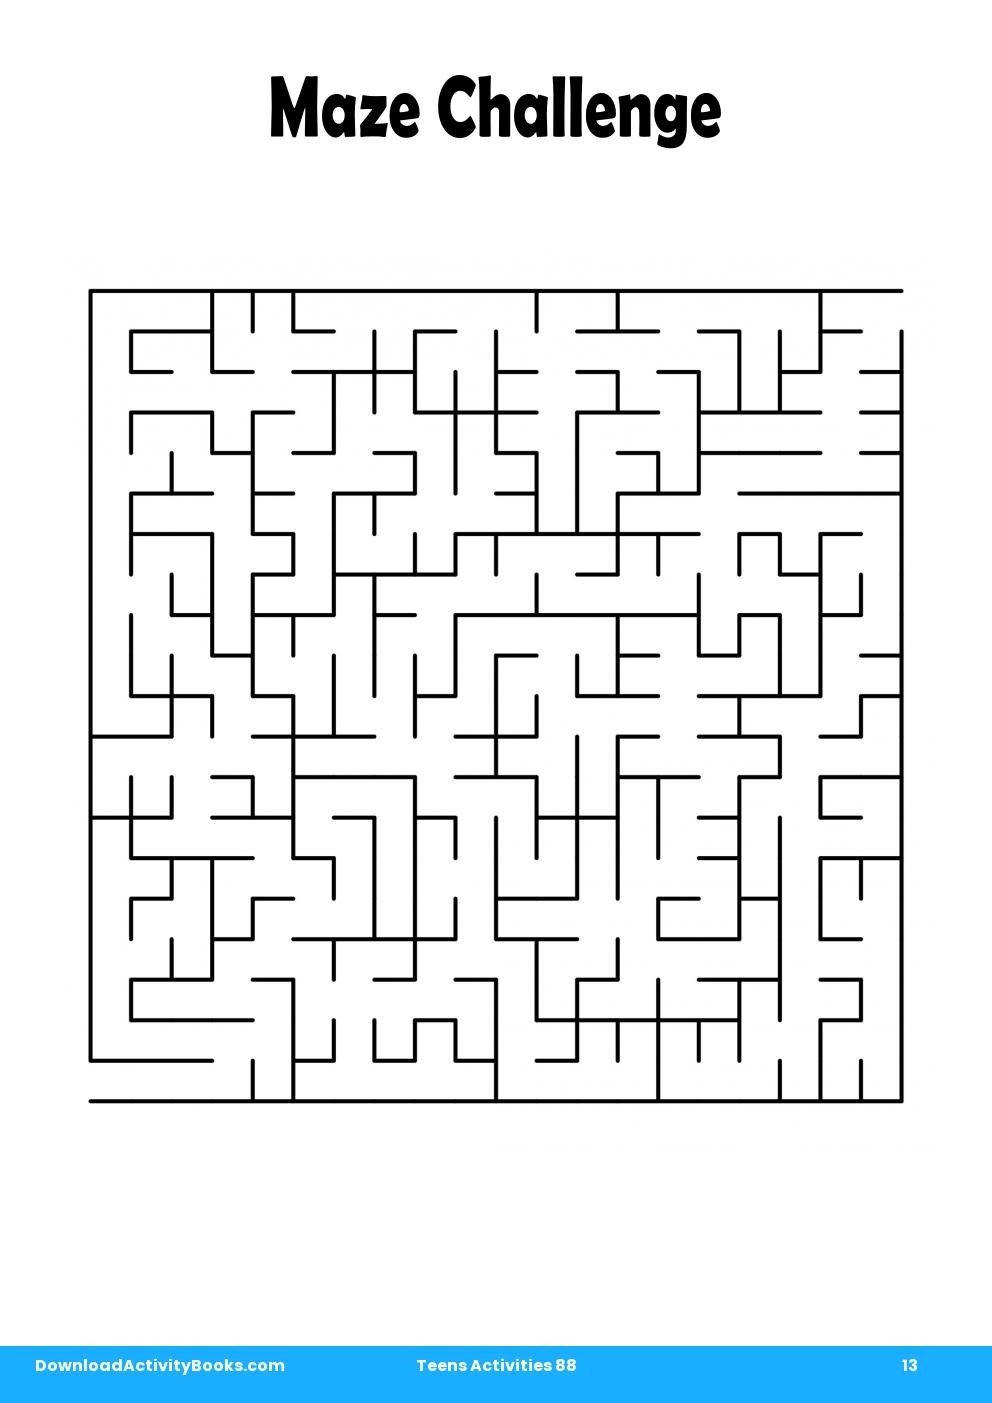 Maze Challenge in Teens Activities 88